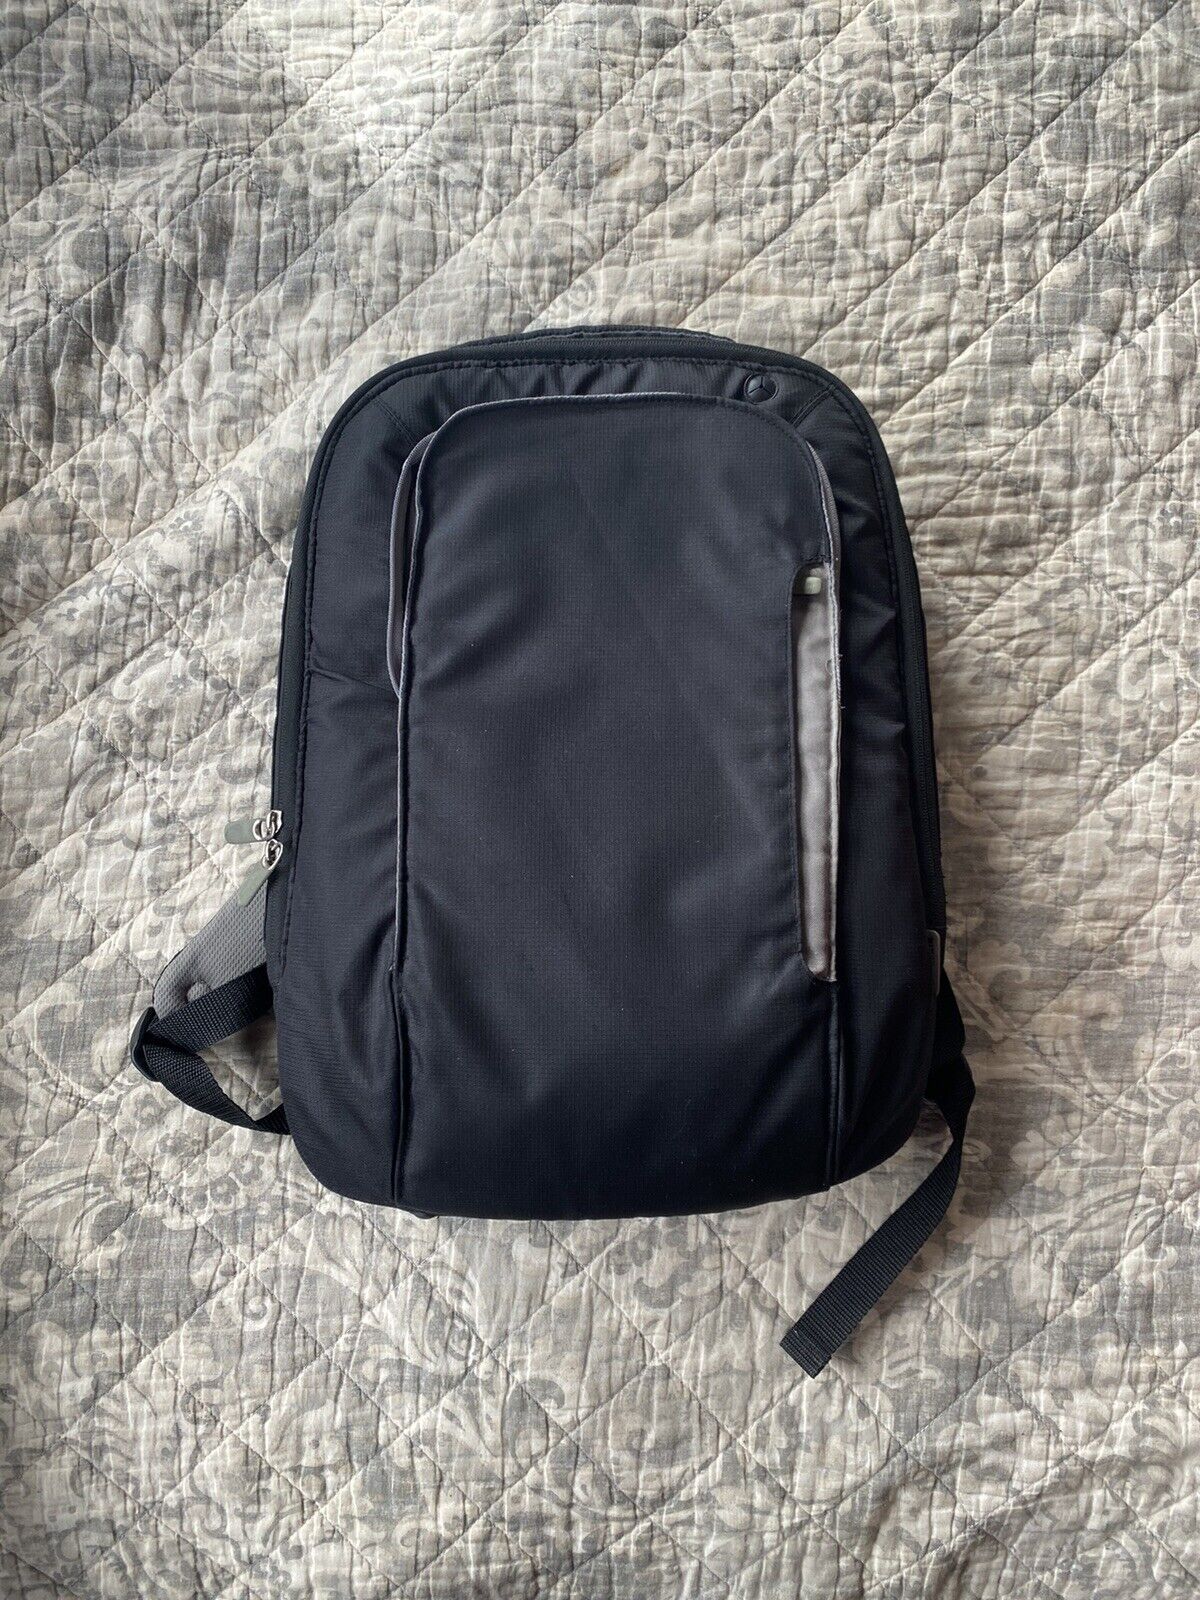 Belkin Laptop Backpack 